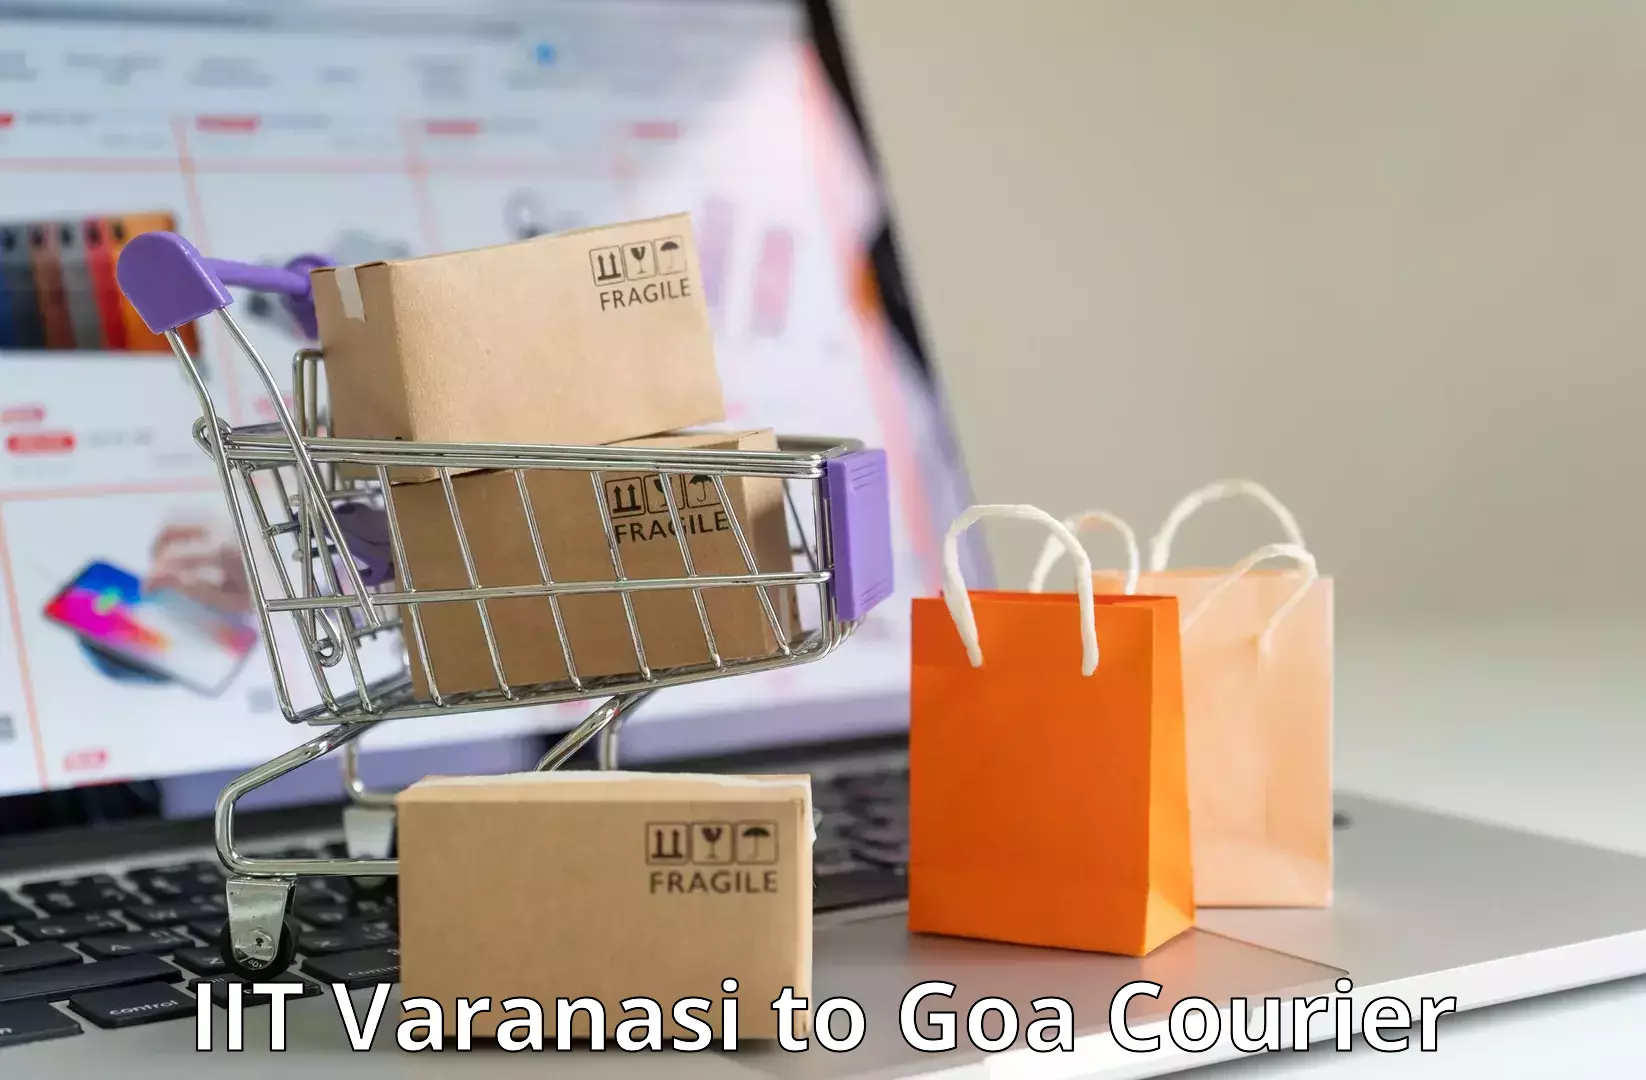 Digital courier platforms IIT Varanasi to IIT Goa